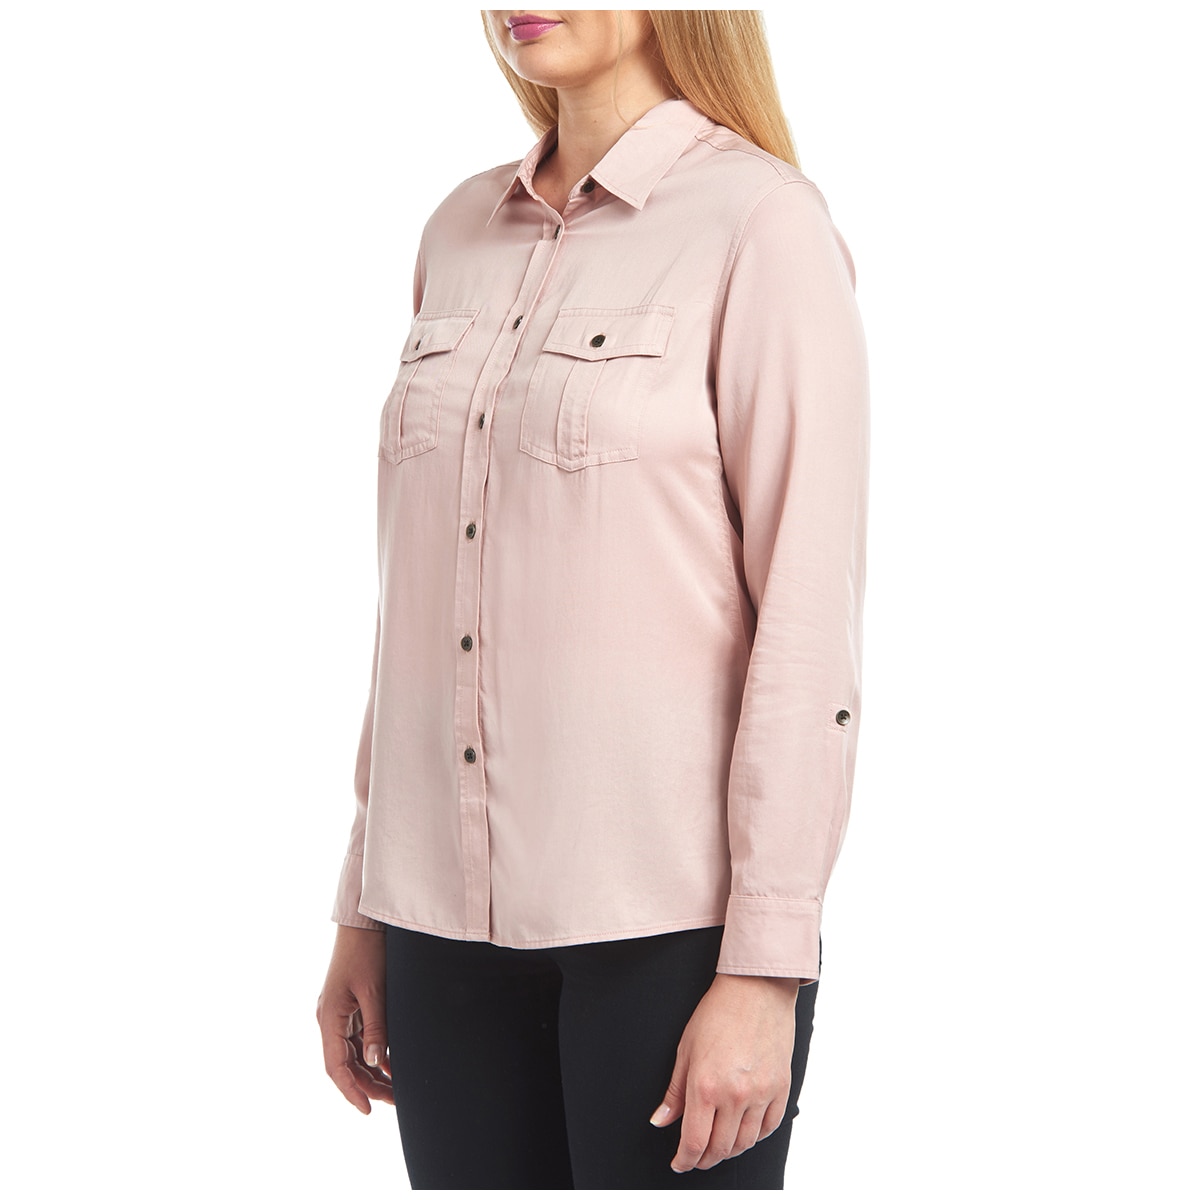 Jachs Women's Tencel Shirt - Pink